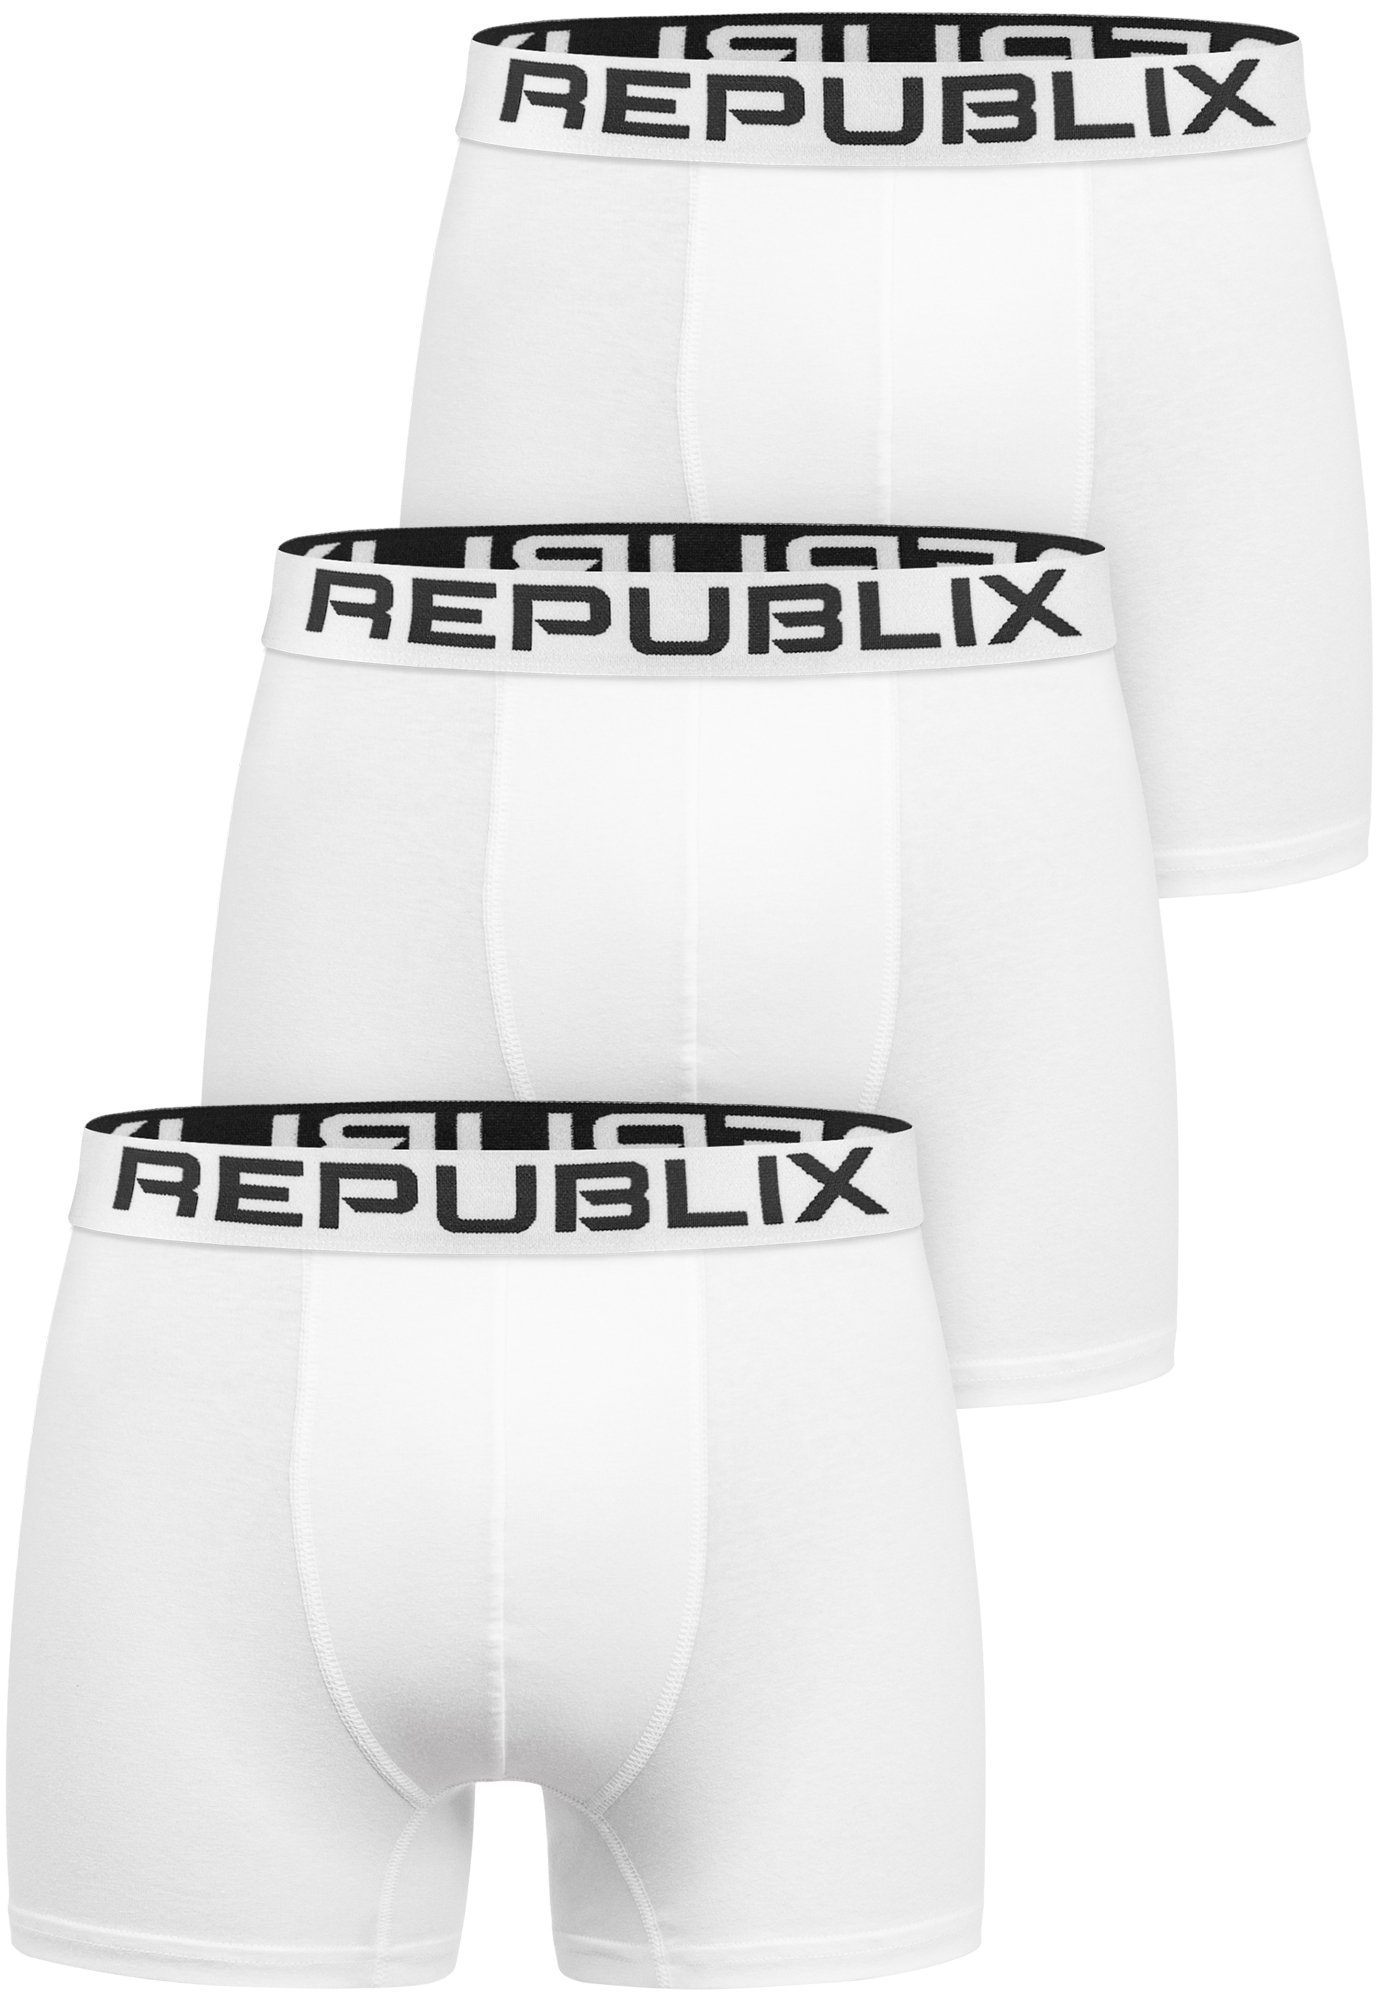 REPUBLIX Boxershorts DON (3er-Pack) Herren Baumwolle Männer Unterhose Unterwäsche Weiß/Weiß